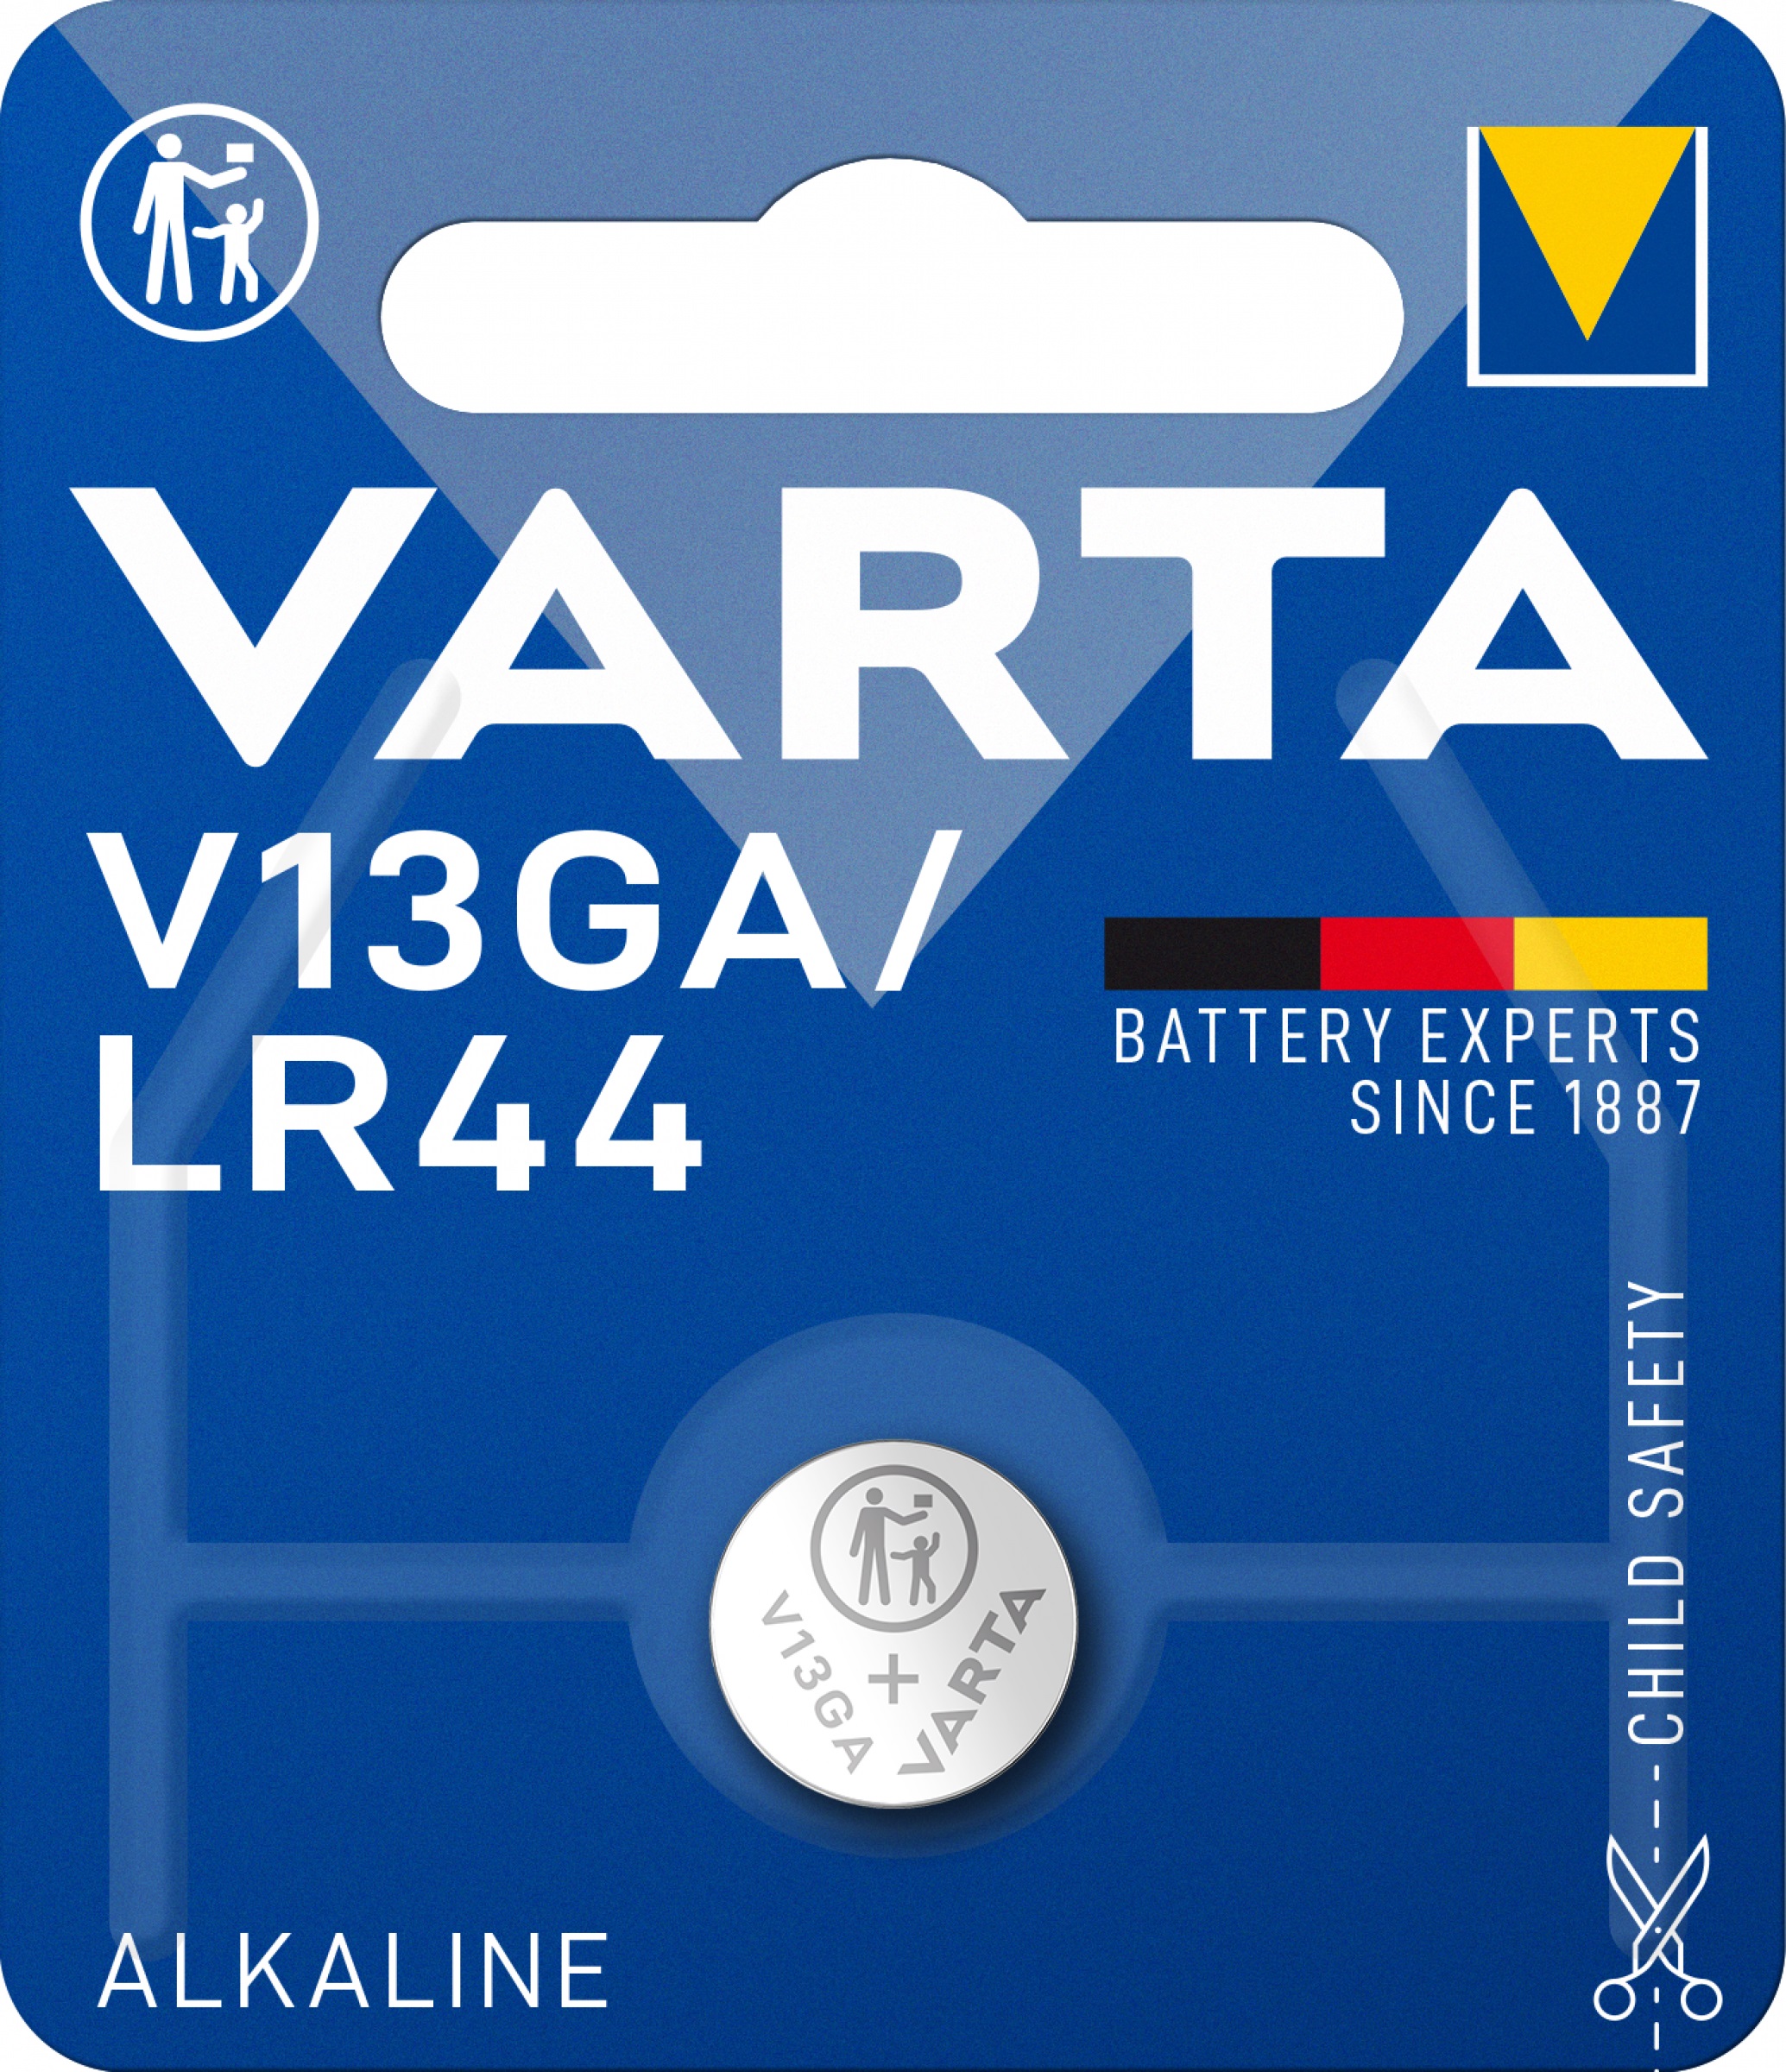 10x Varta V13GA Knopfzelle LR44 Batterie 1,5V 125 mAh